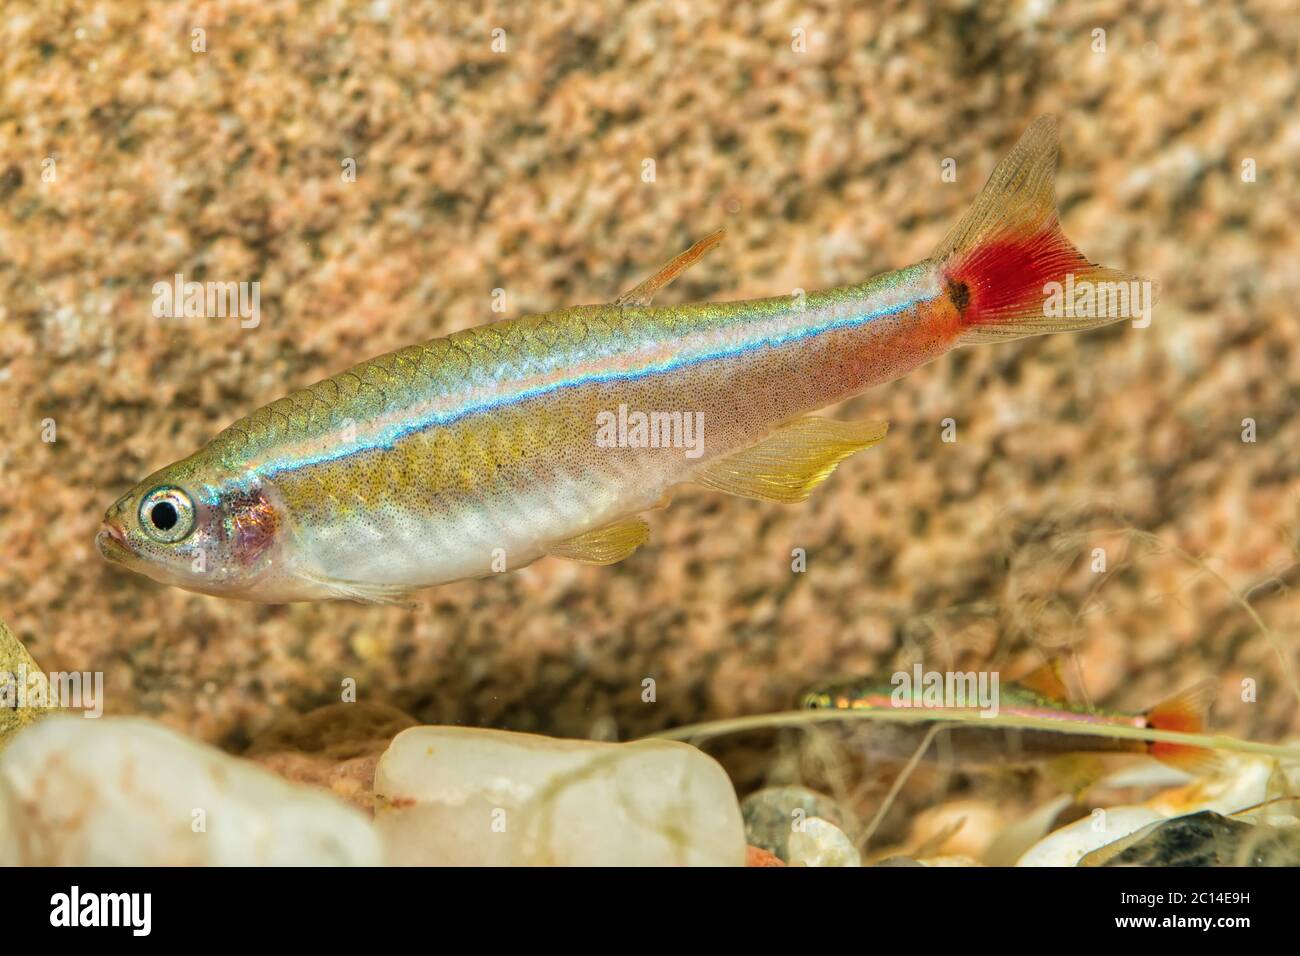 Portrait of barb fish (Tanichthys albonubes) in aquarium Stock Photo